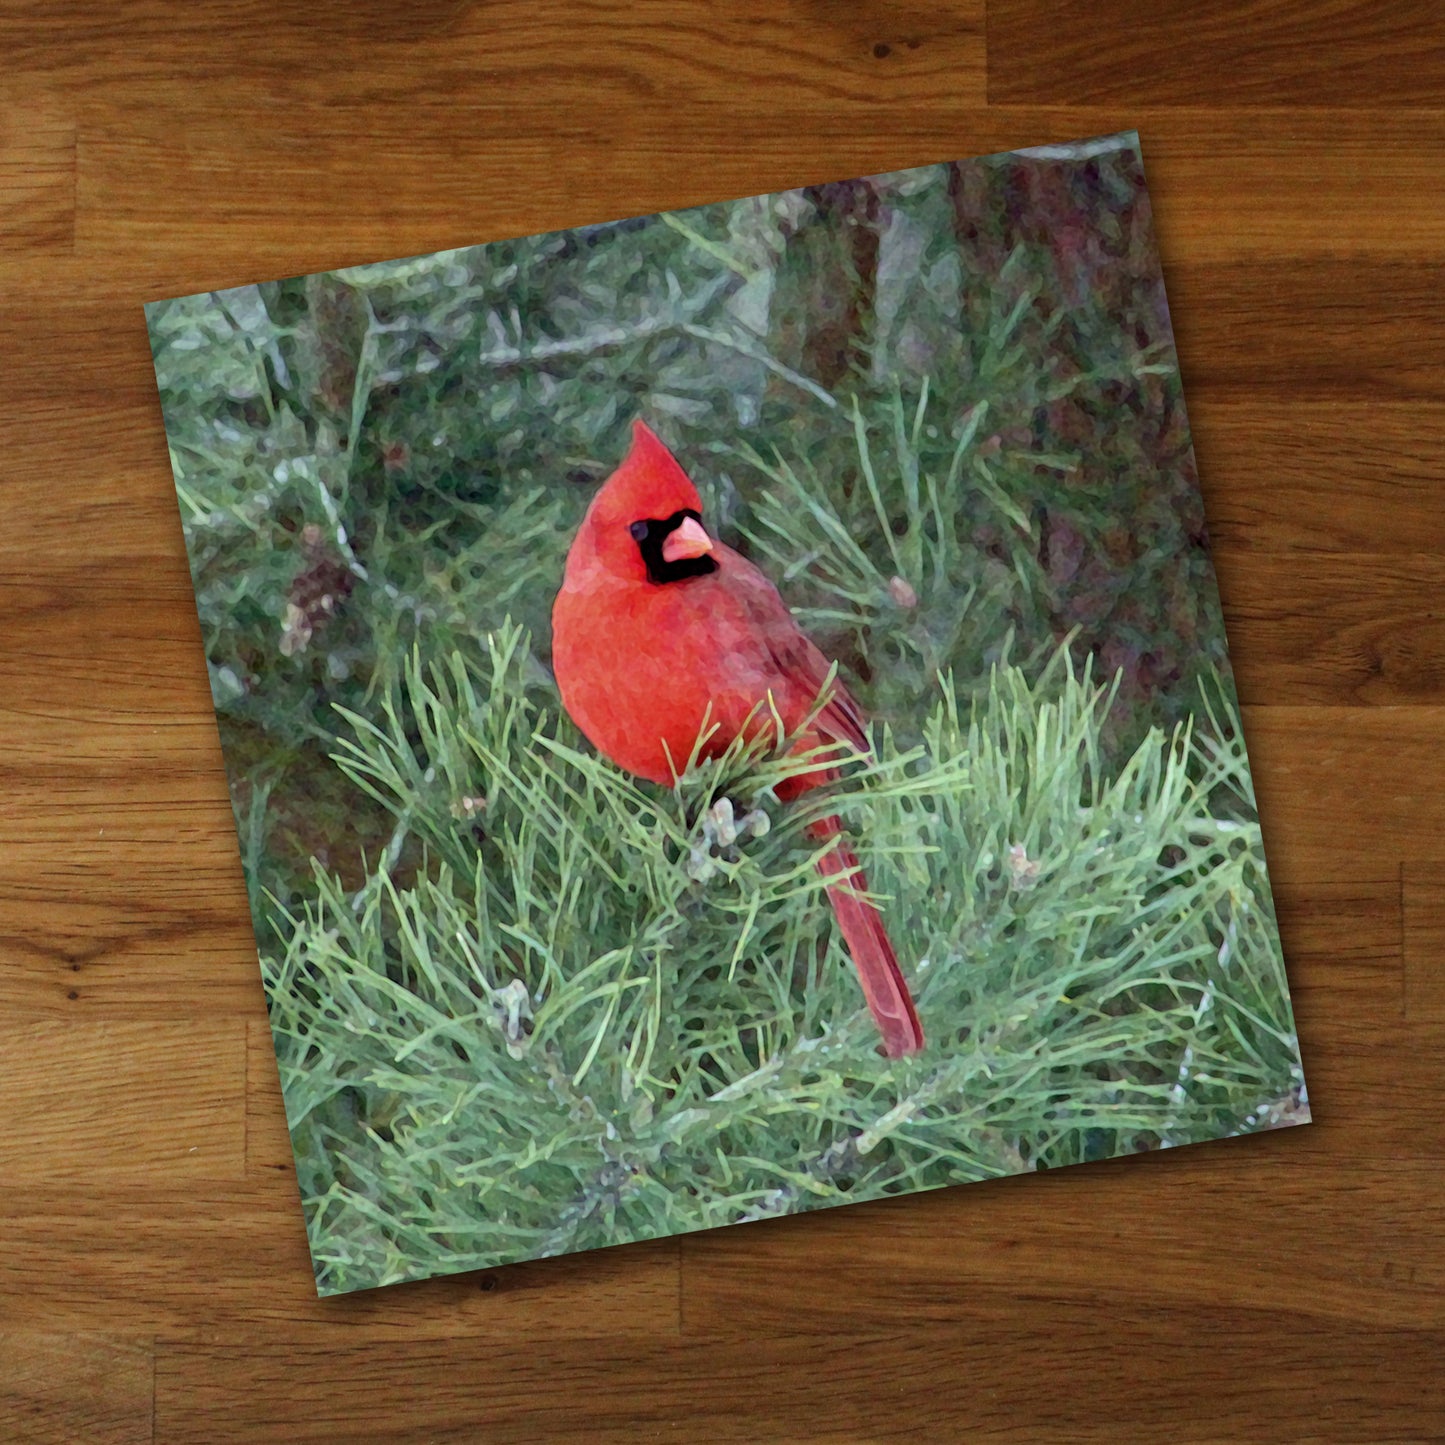 Red Cardinal Fine Art Print, Unframed